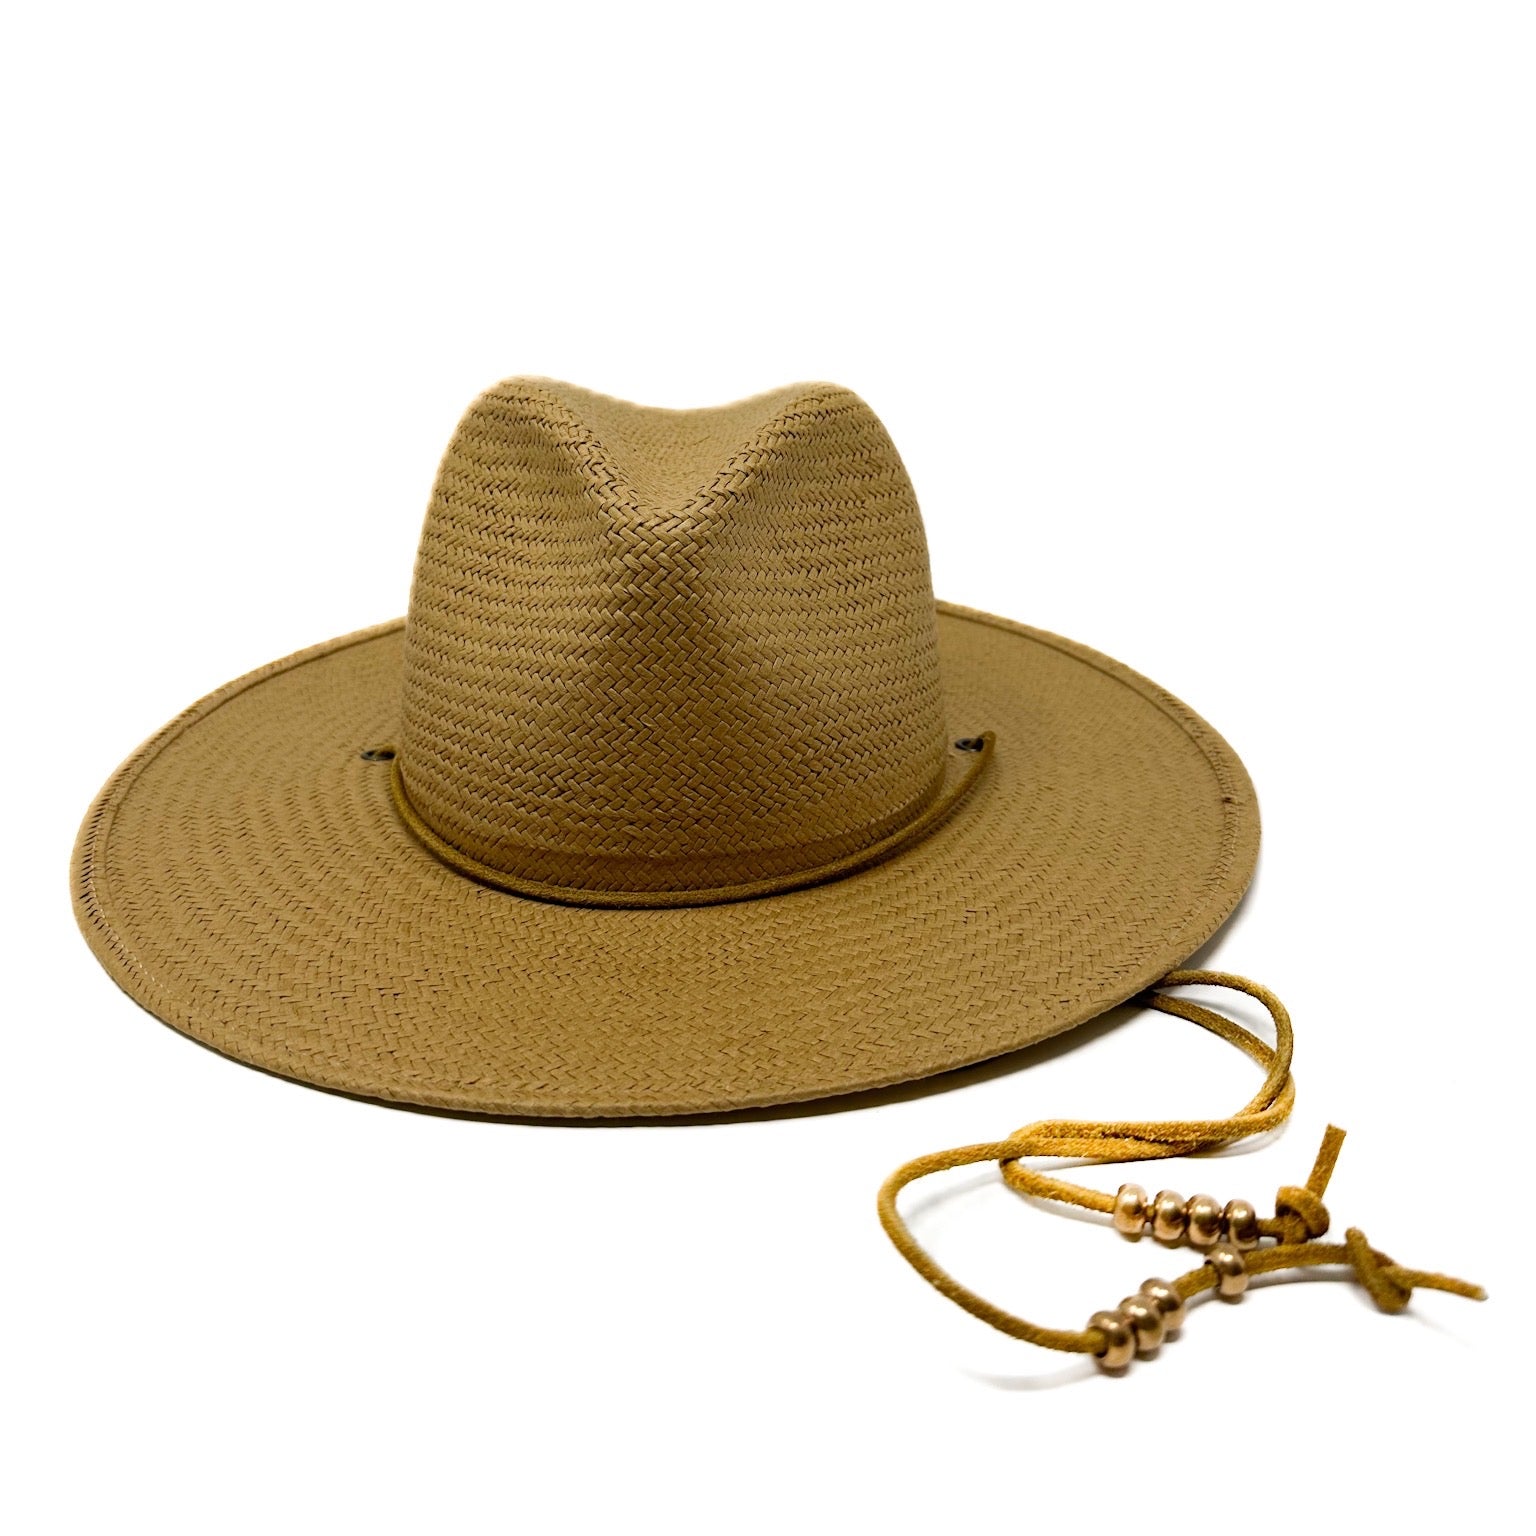 SEDONA Packable Straw Hat w/ neck tie in Bronze